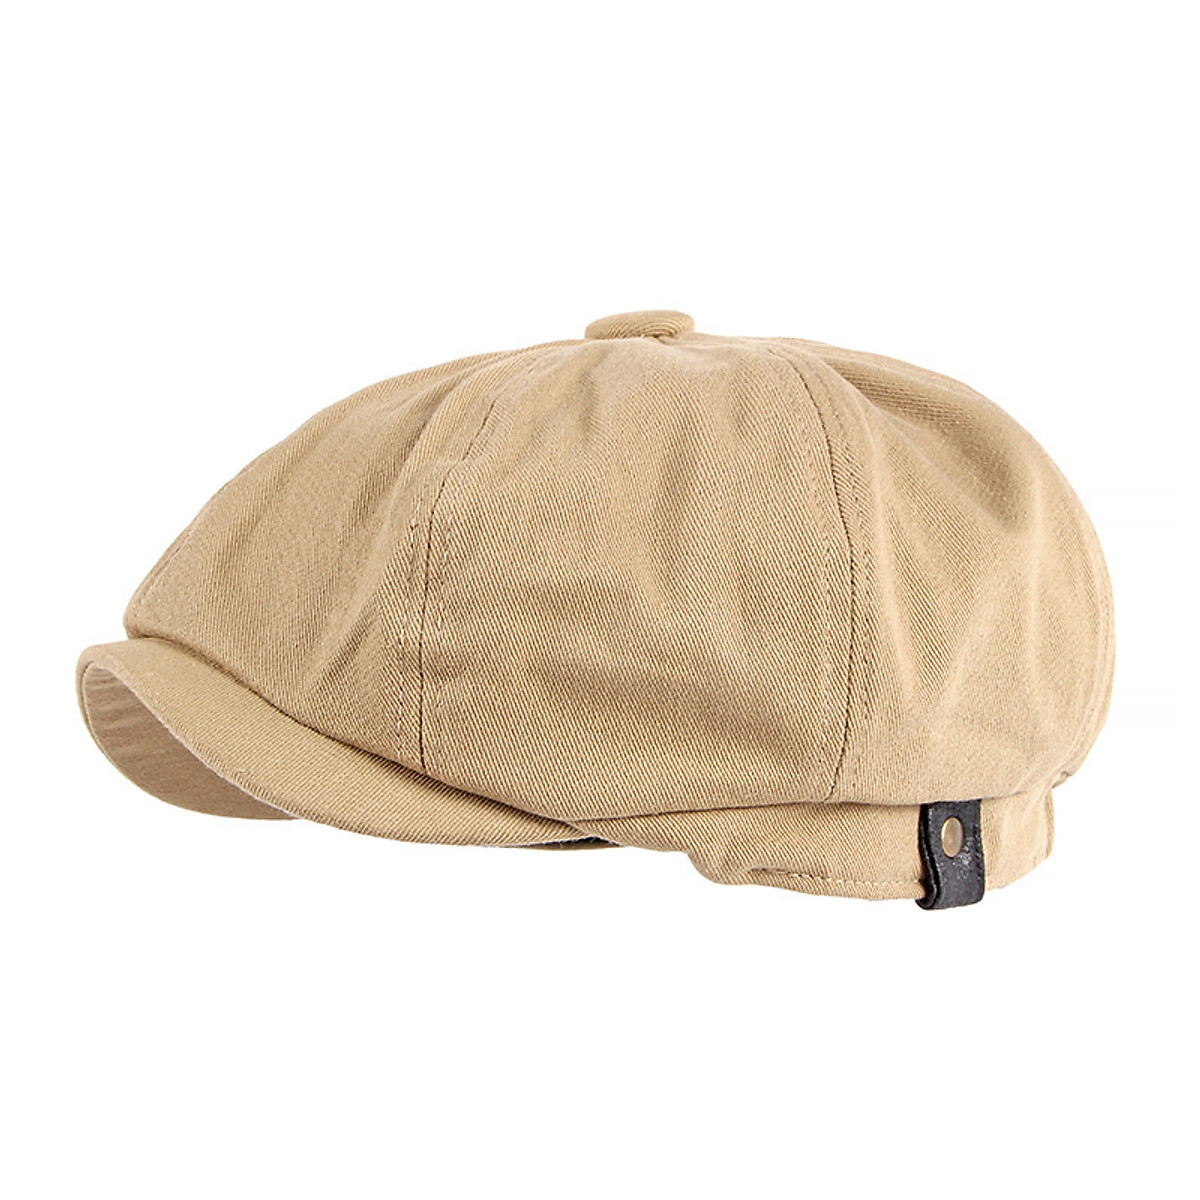 Nón bánh tiêu, mũ nồi beret nam nữ MN029 kiểu dáng classic cổ điển